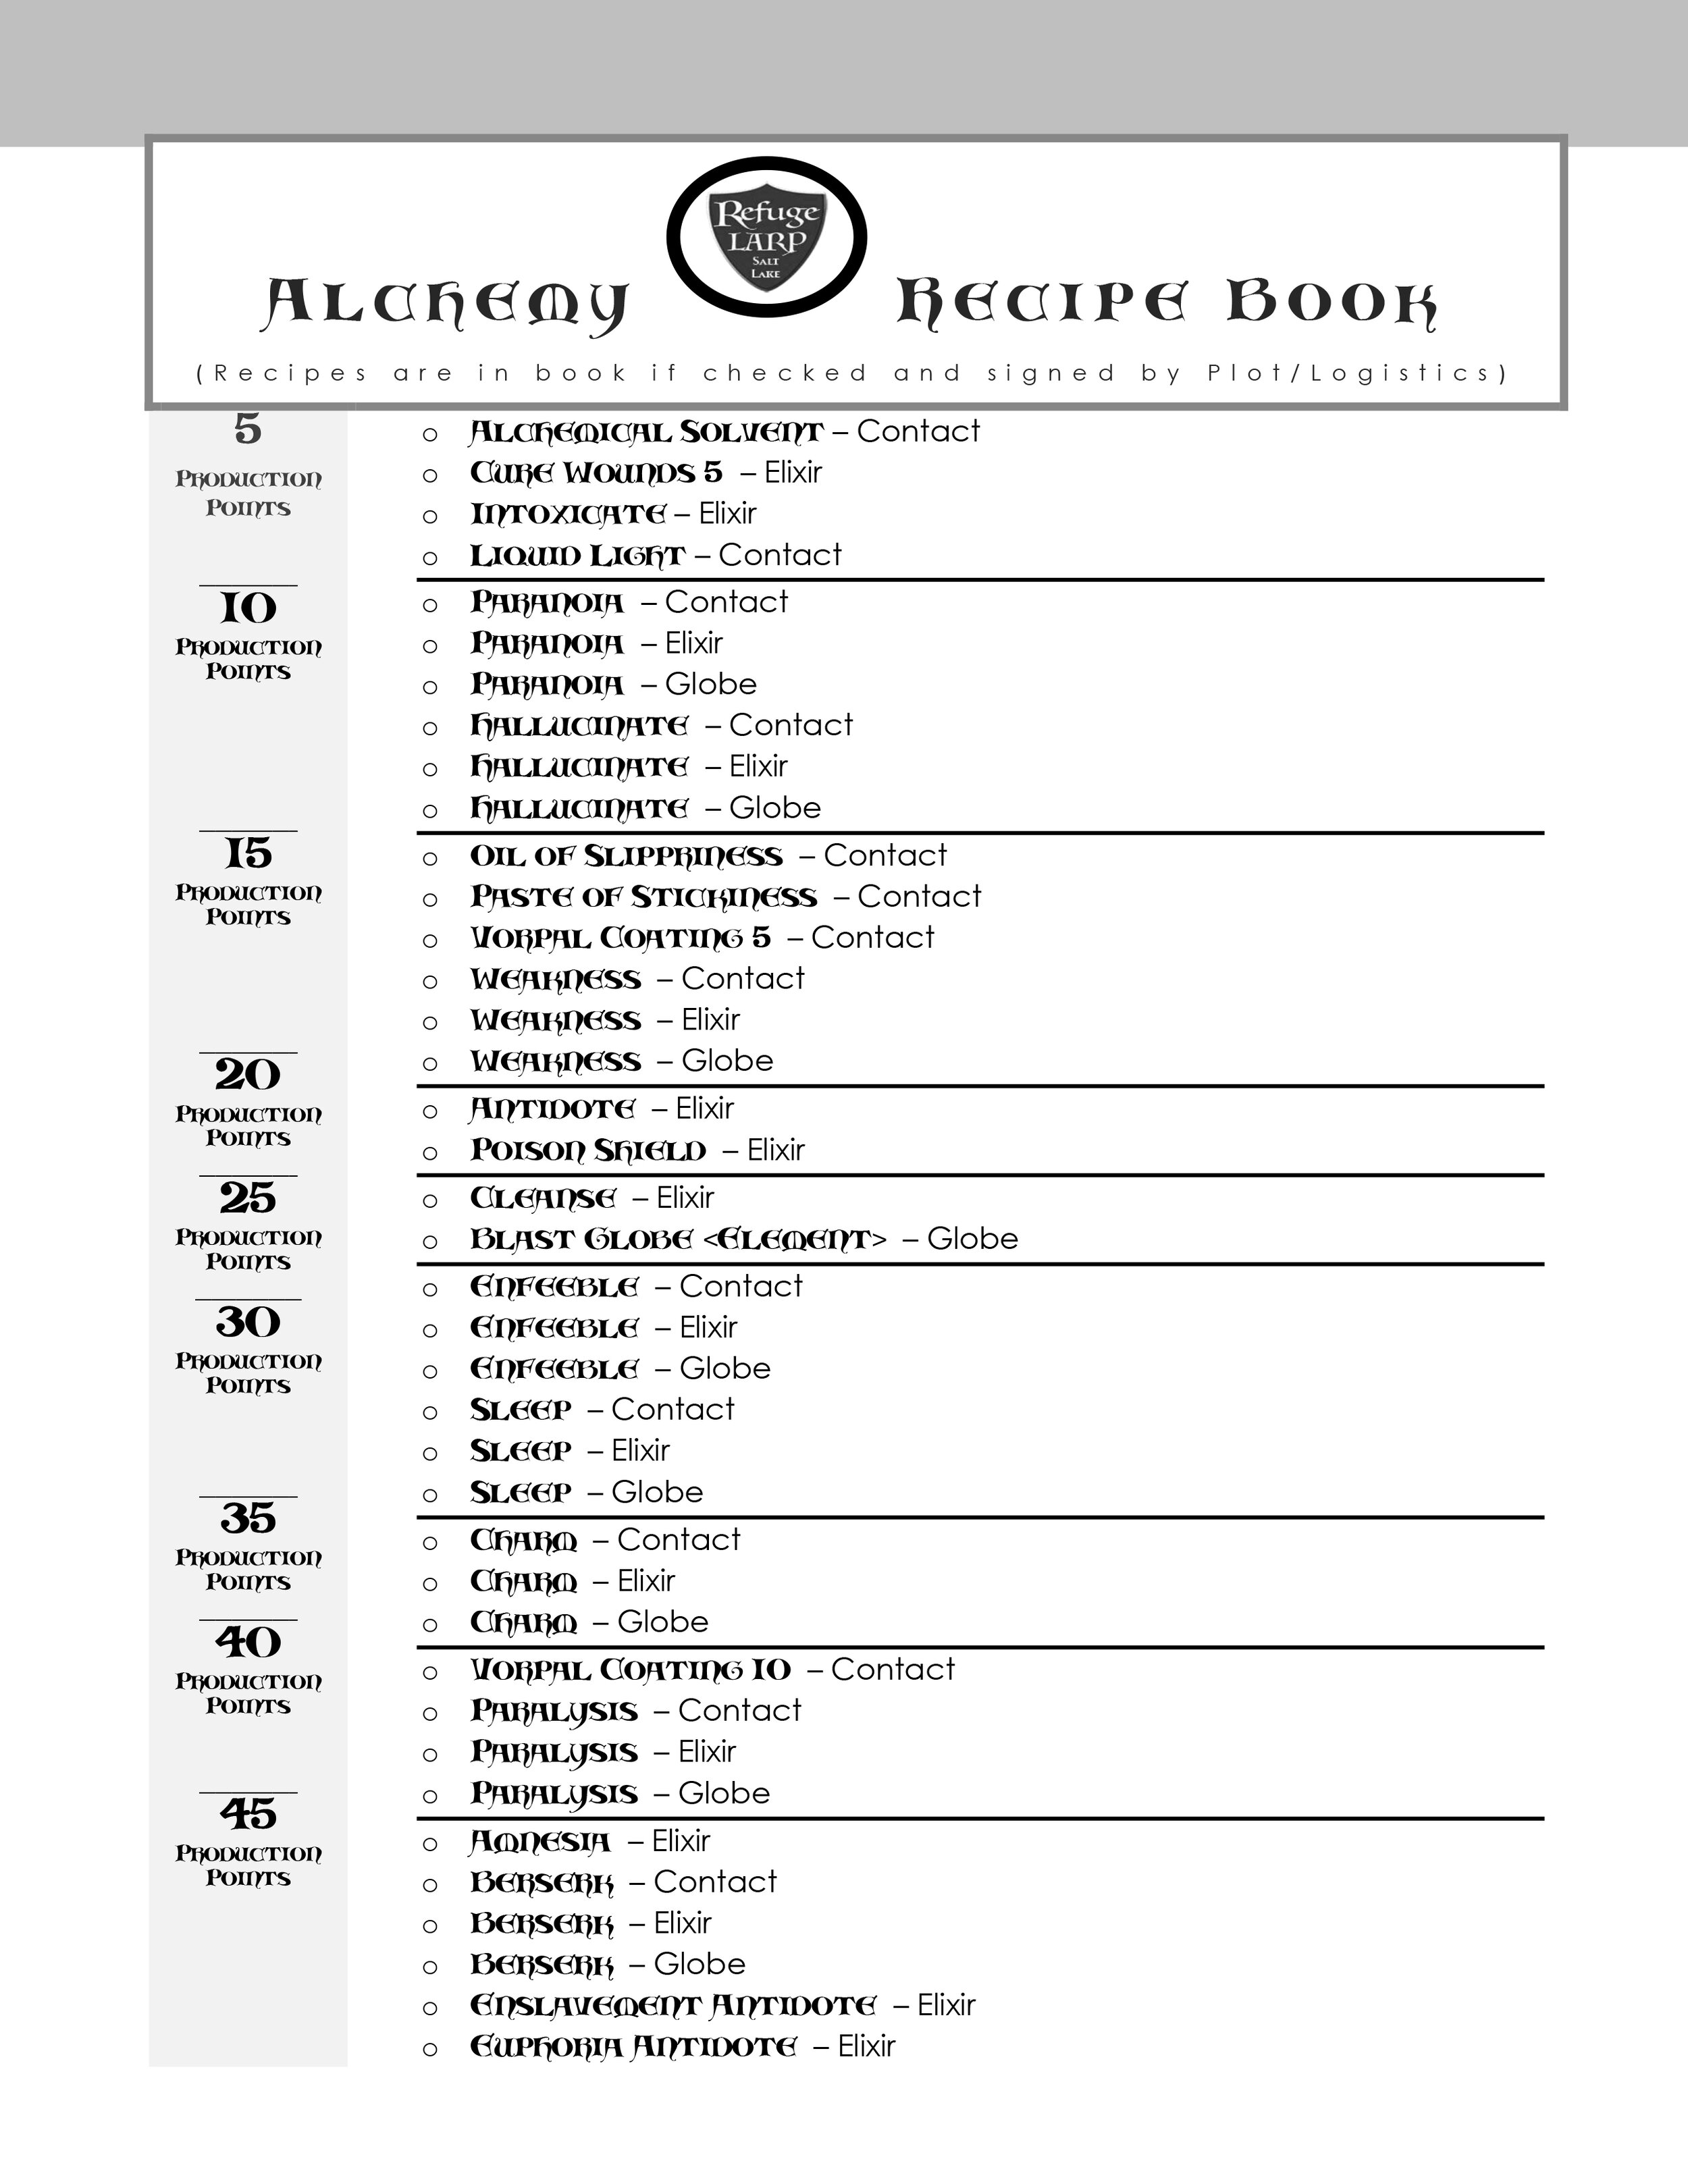 Alchemy Recipe Book Tag (8" x 10") - Digital